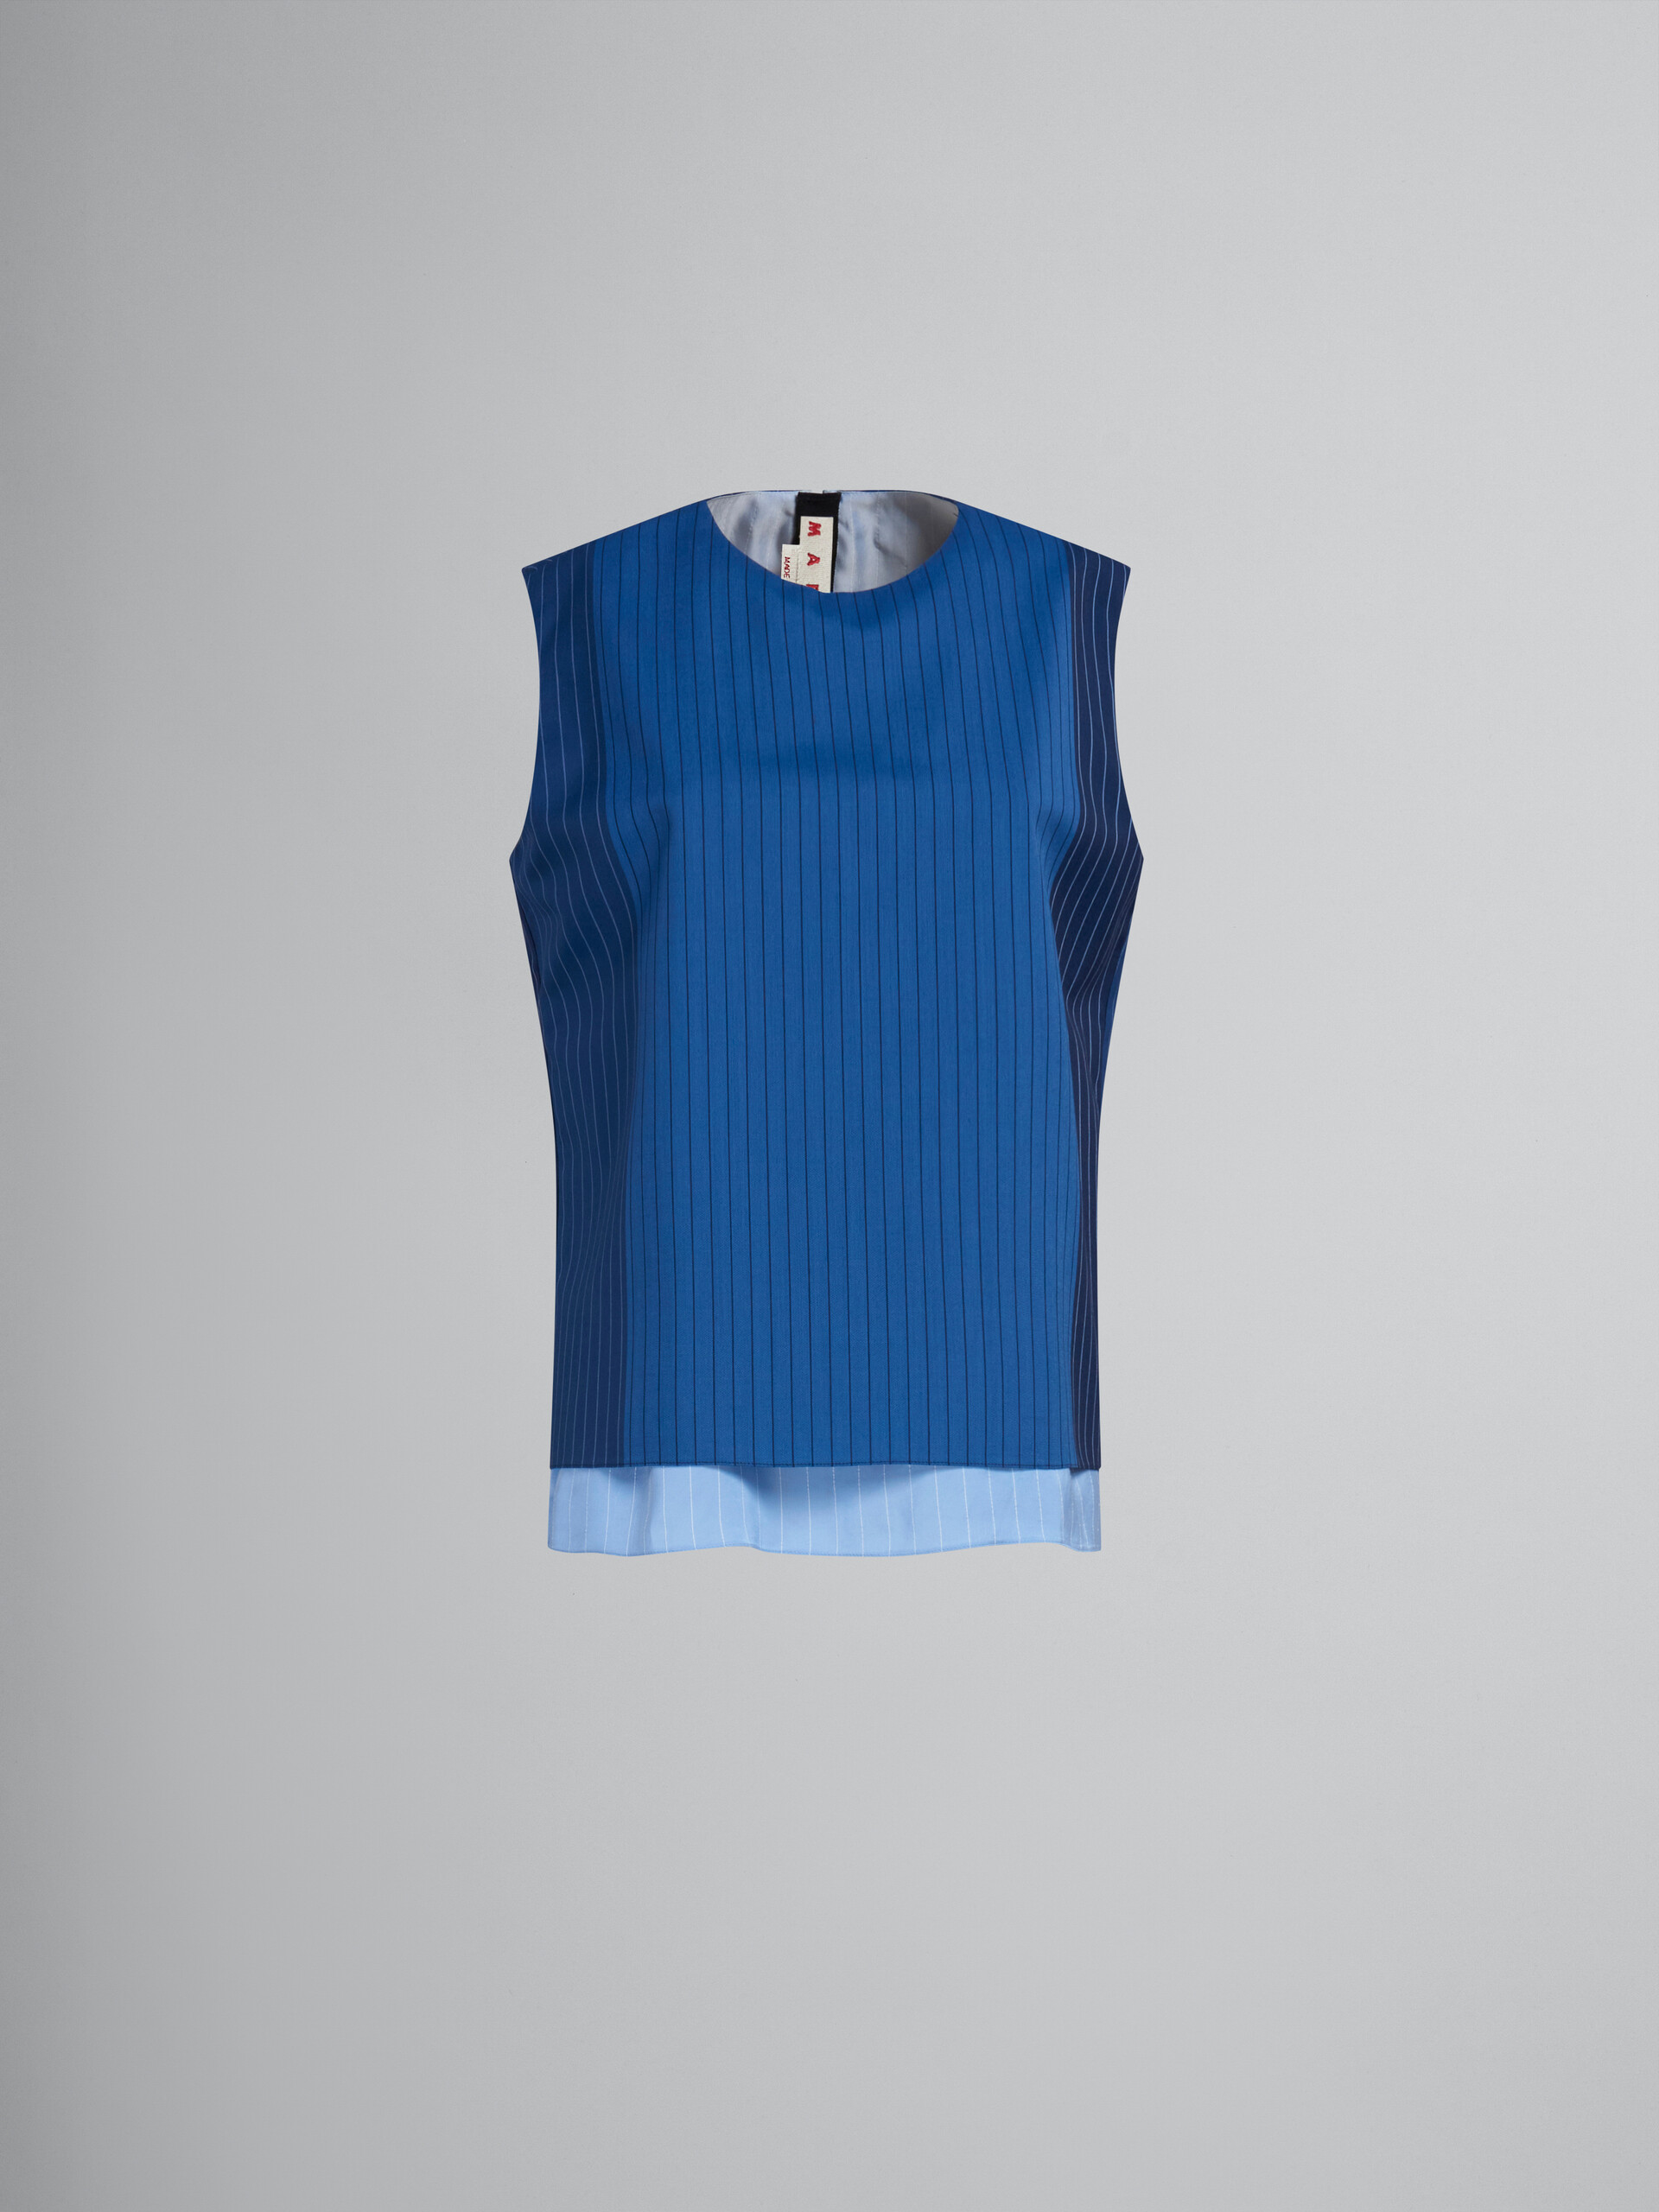 Top sin mangas de lana azul degradado con raya diplomática - Camisas - Image 1